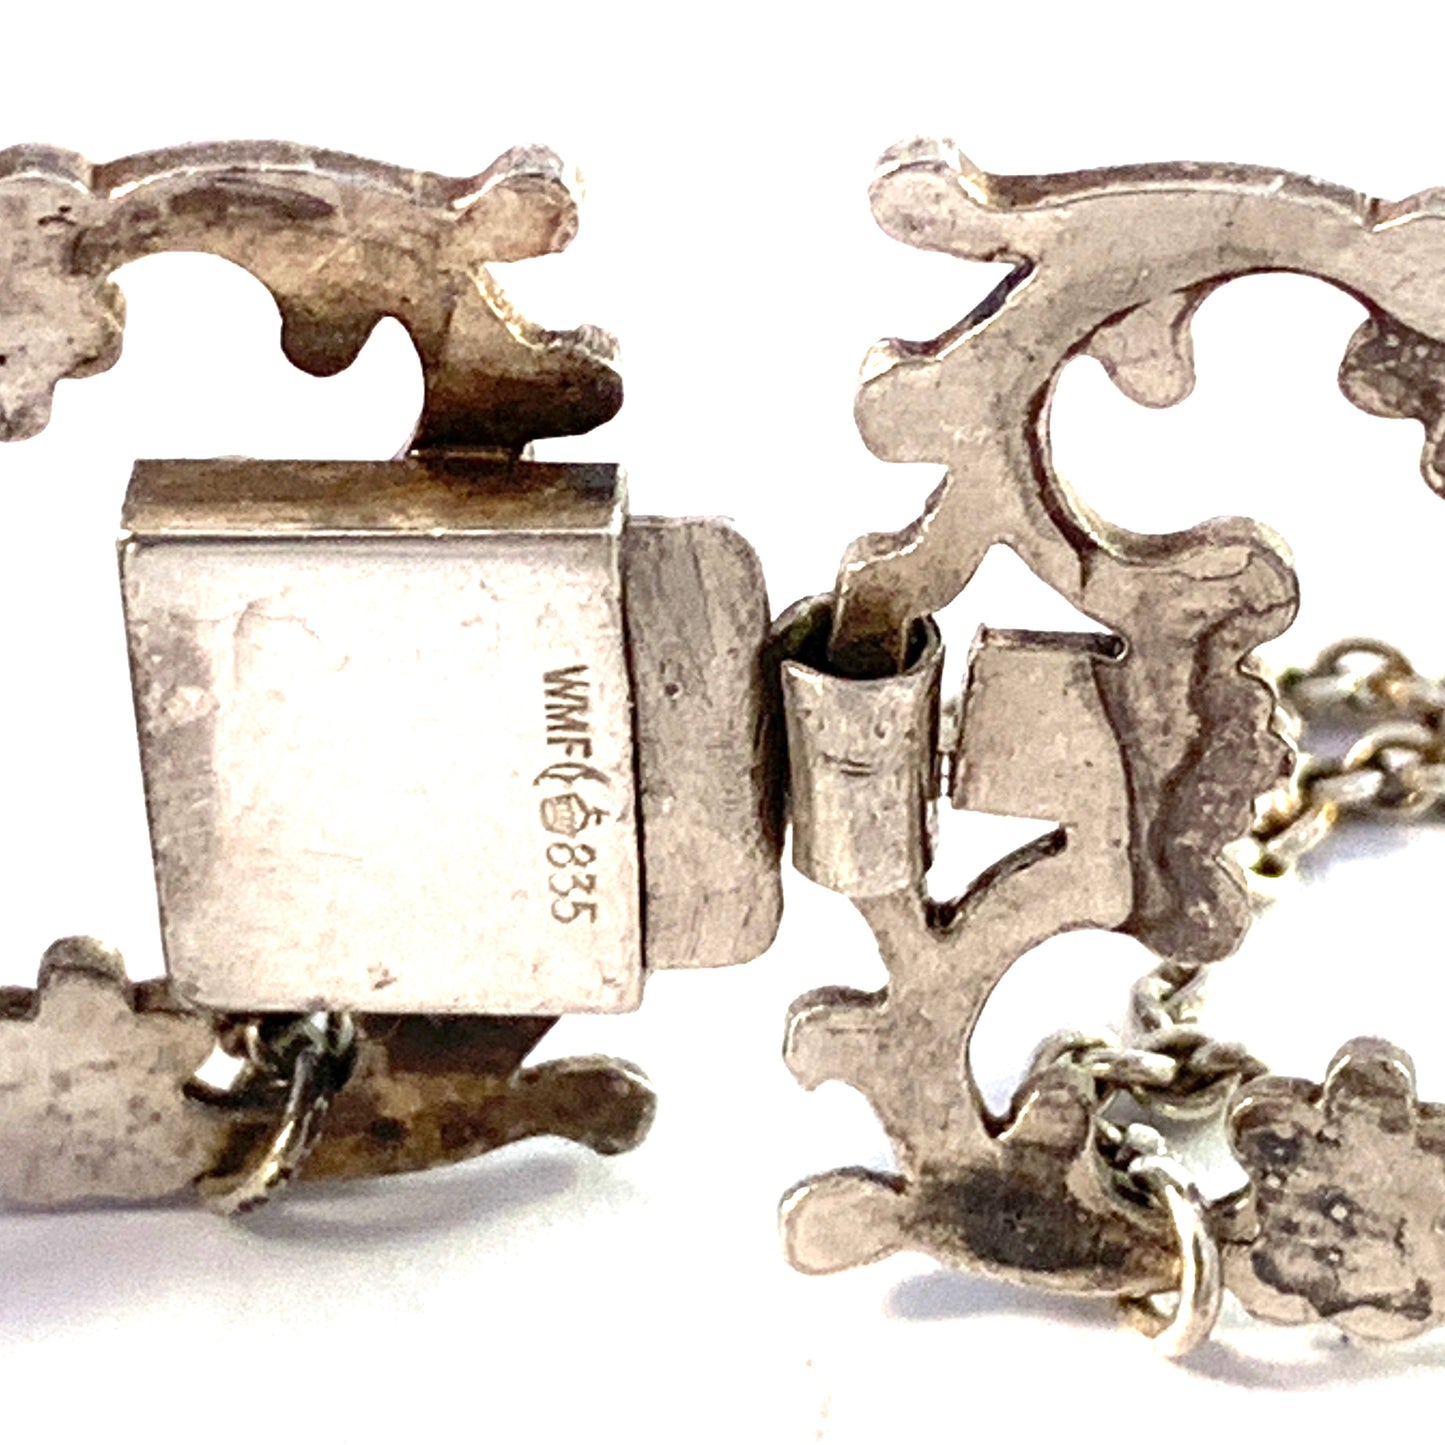 WMF Wurttembergische Metallwarenfabrik, Germany Early 1900s. Solid Silver Link Bracelet.